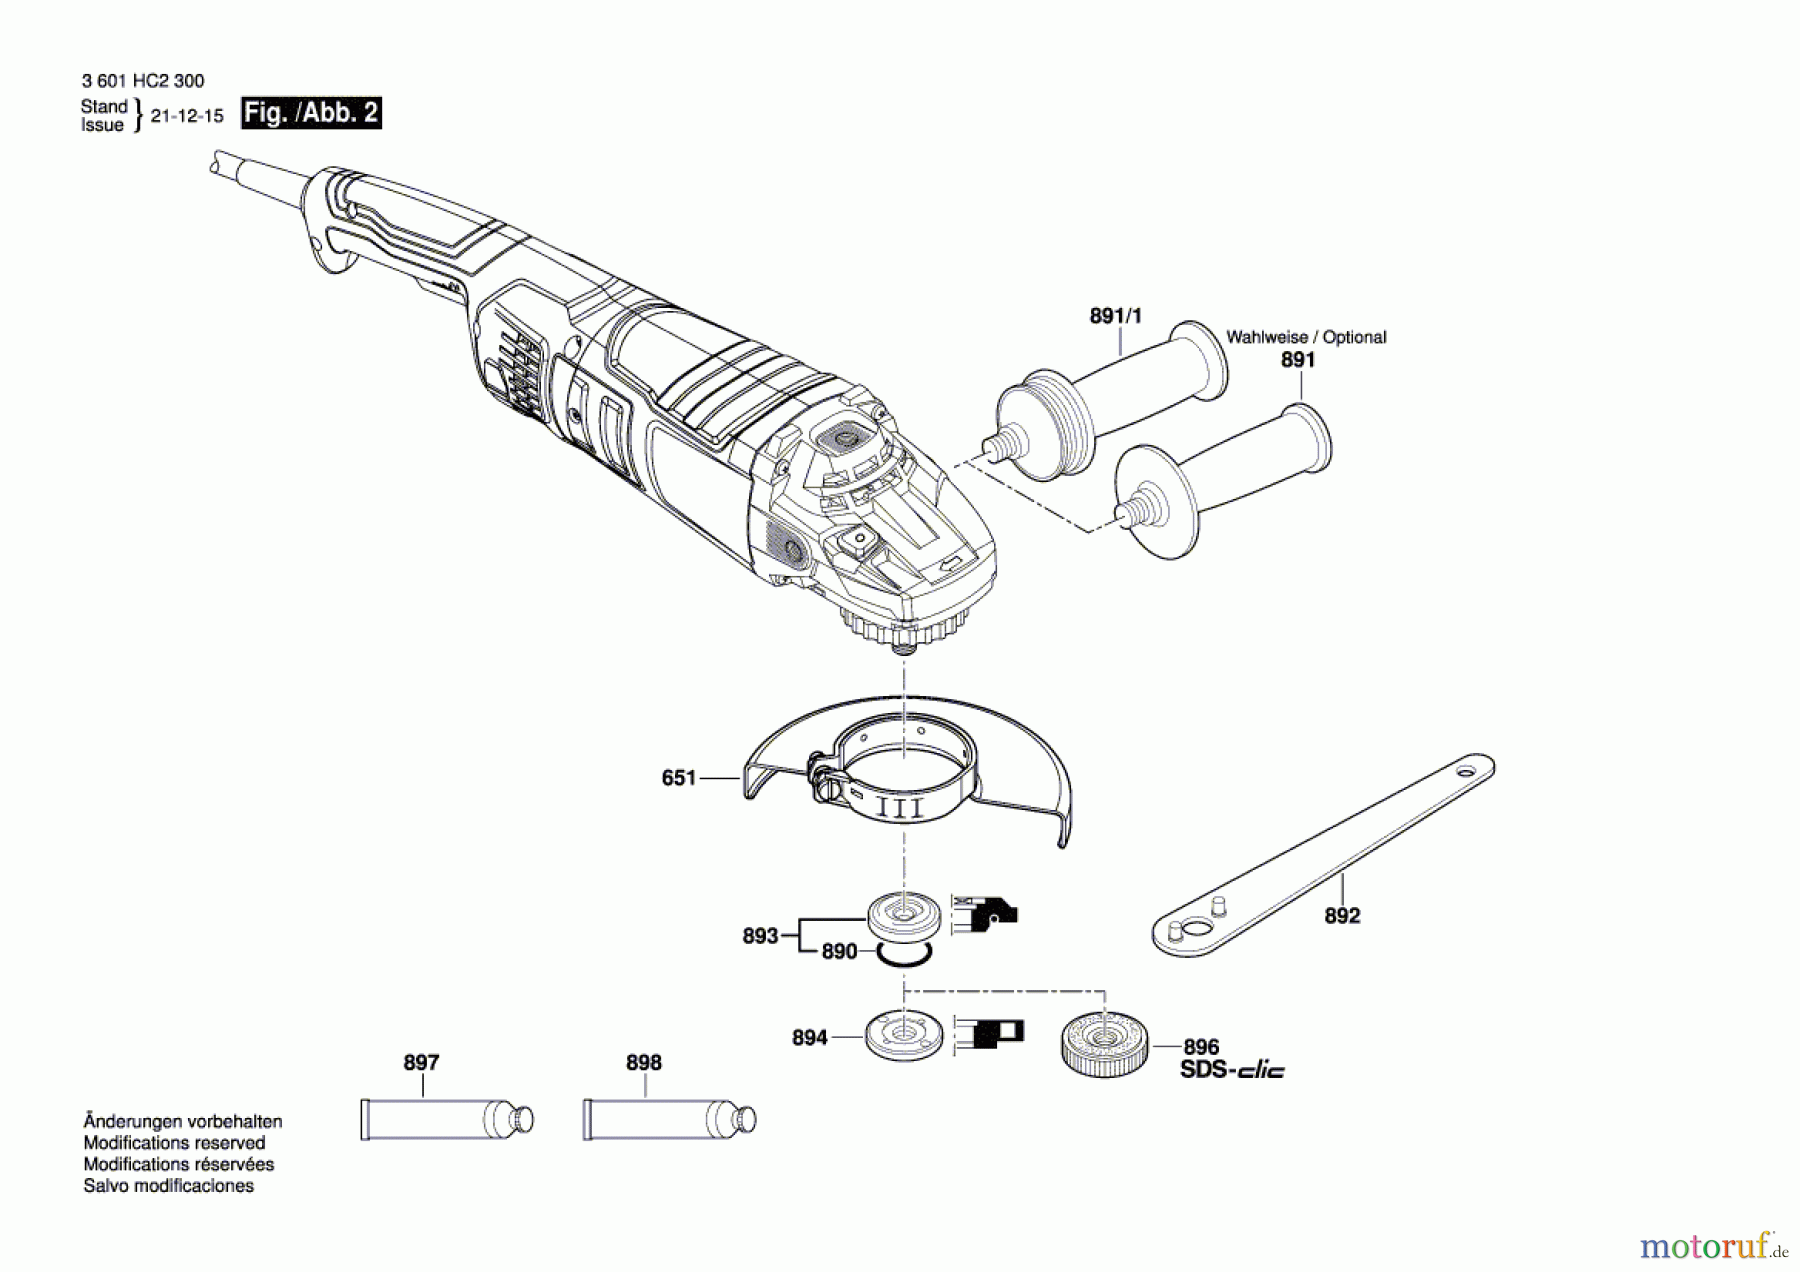  Bosch Werkzeug Winkelschleifer GWS 24-180JZ Seite 2